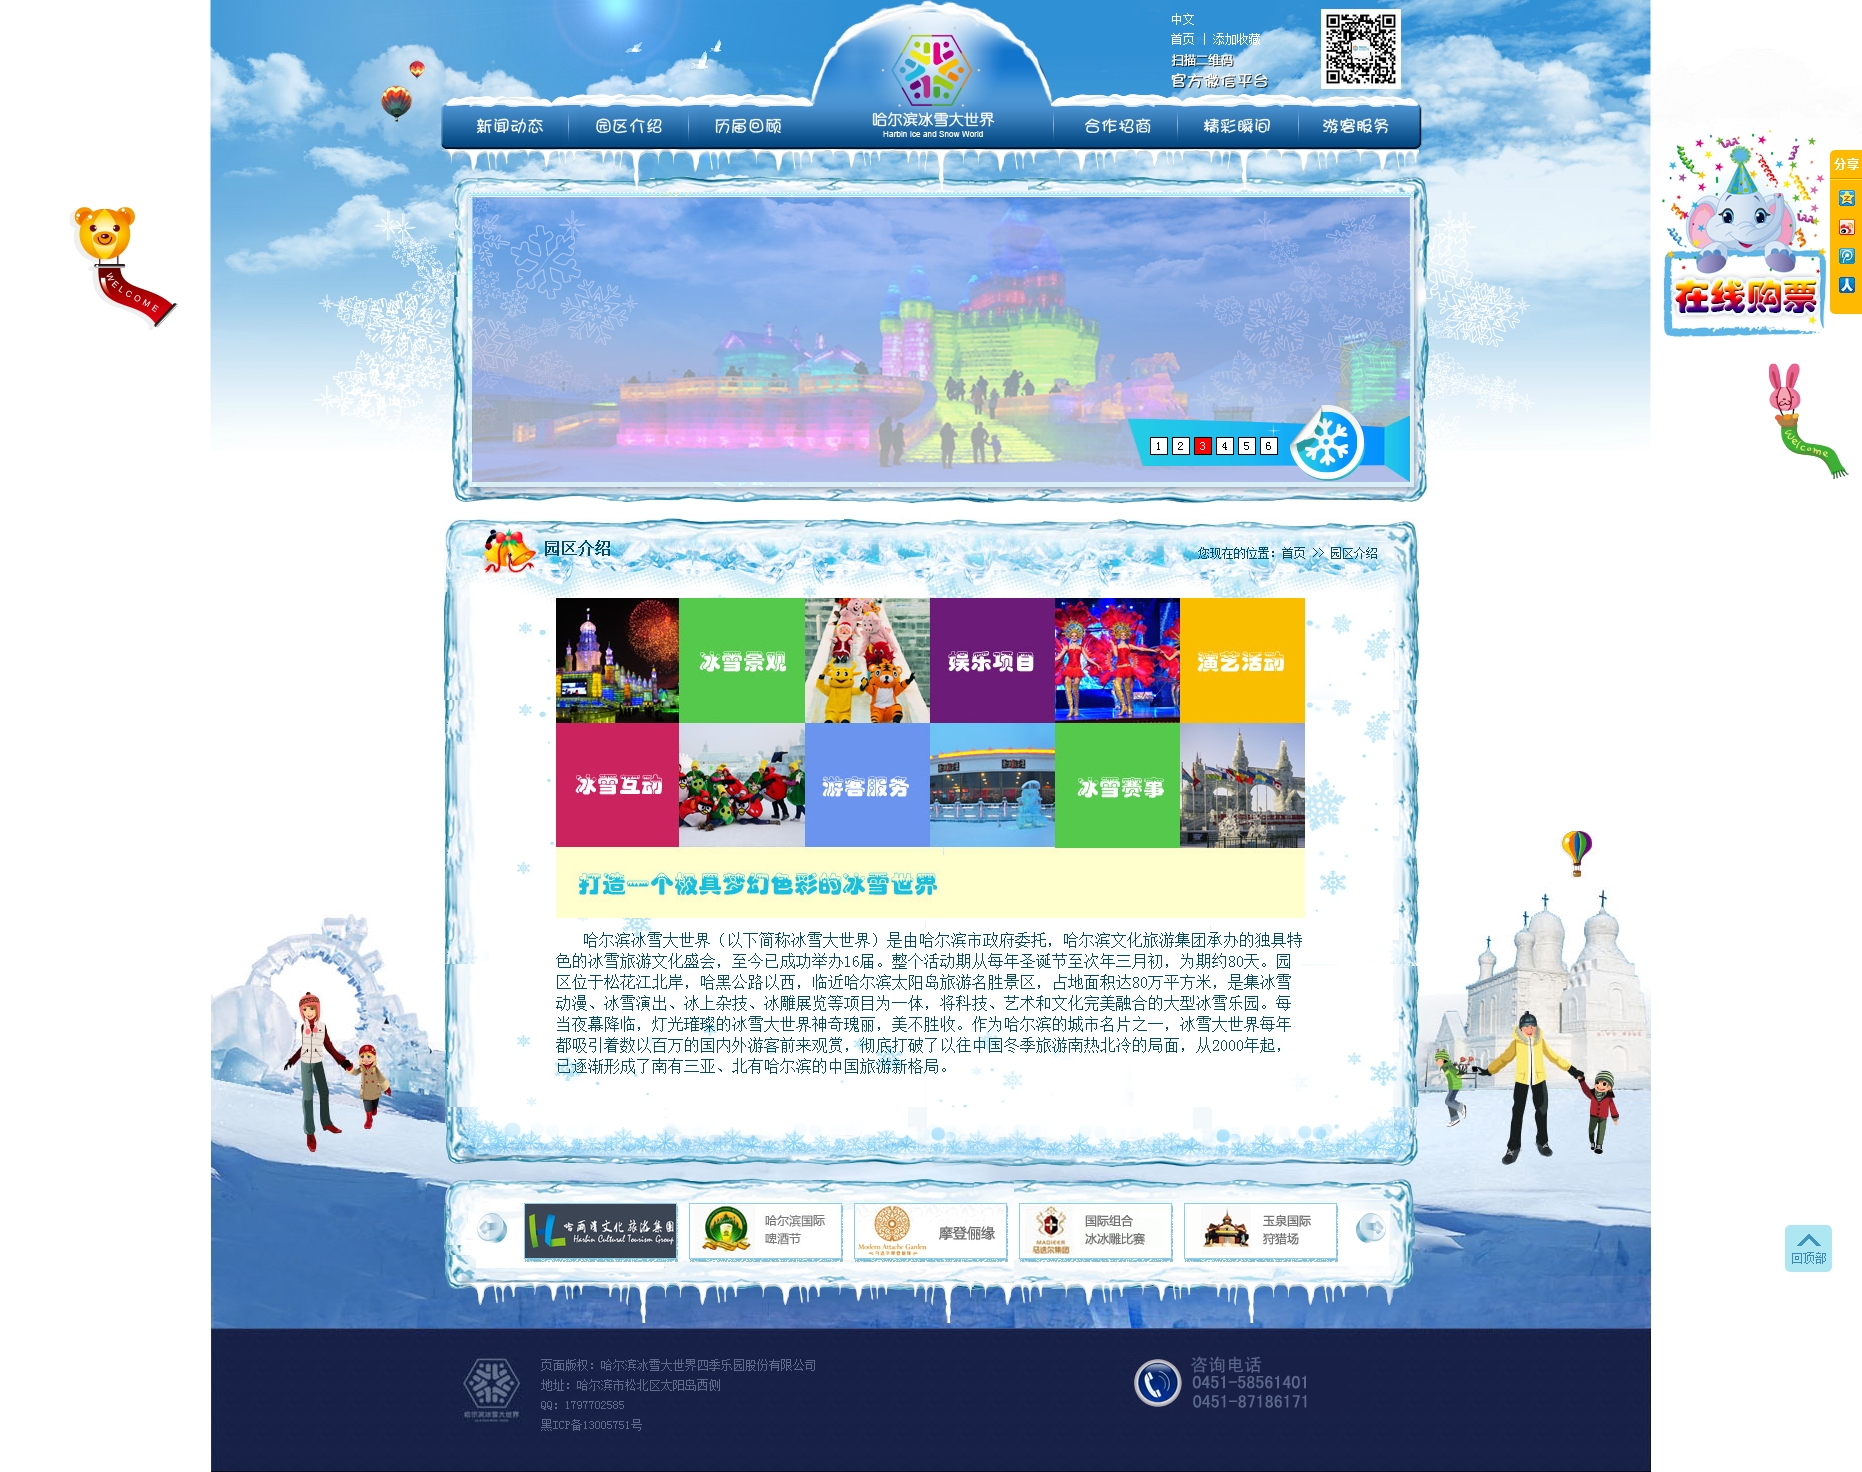 哈尔滨冰雪游乐园有限责任公司 